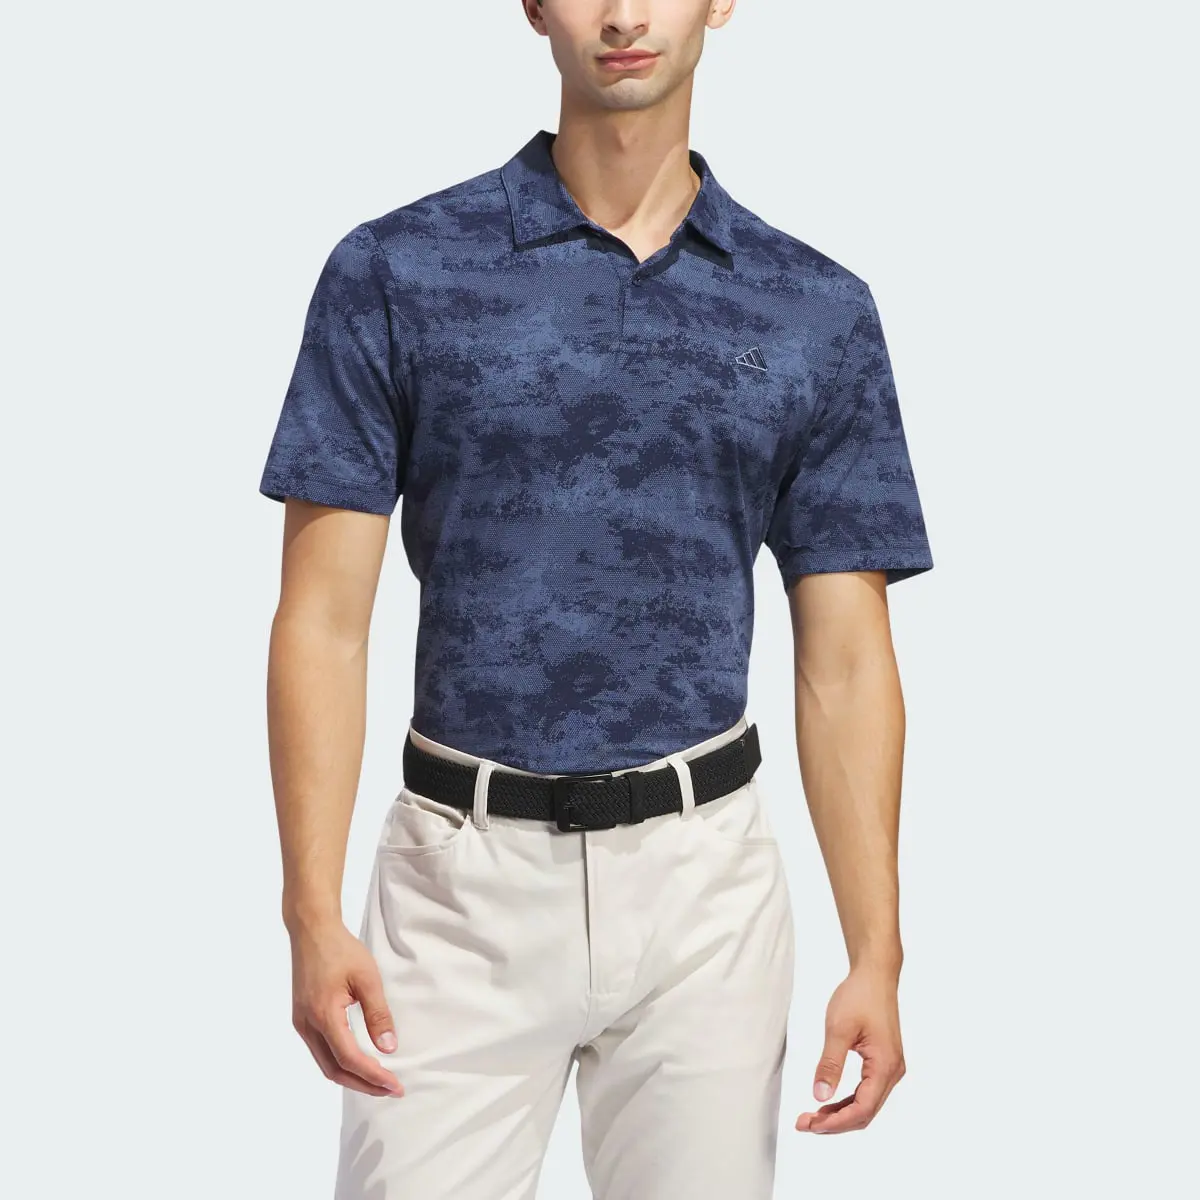 Adidas Go-To Printed Mesh Polo Shirt. 1